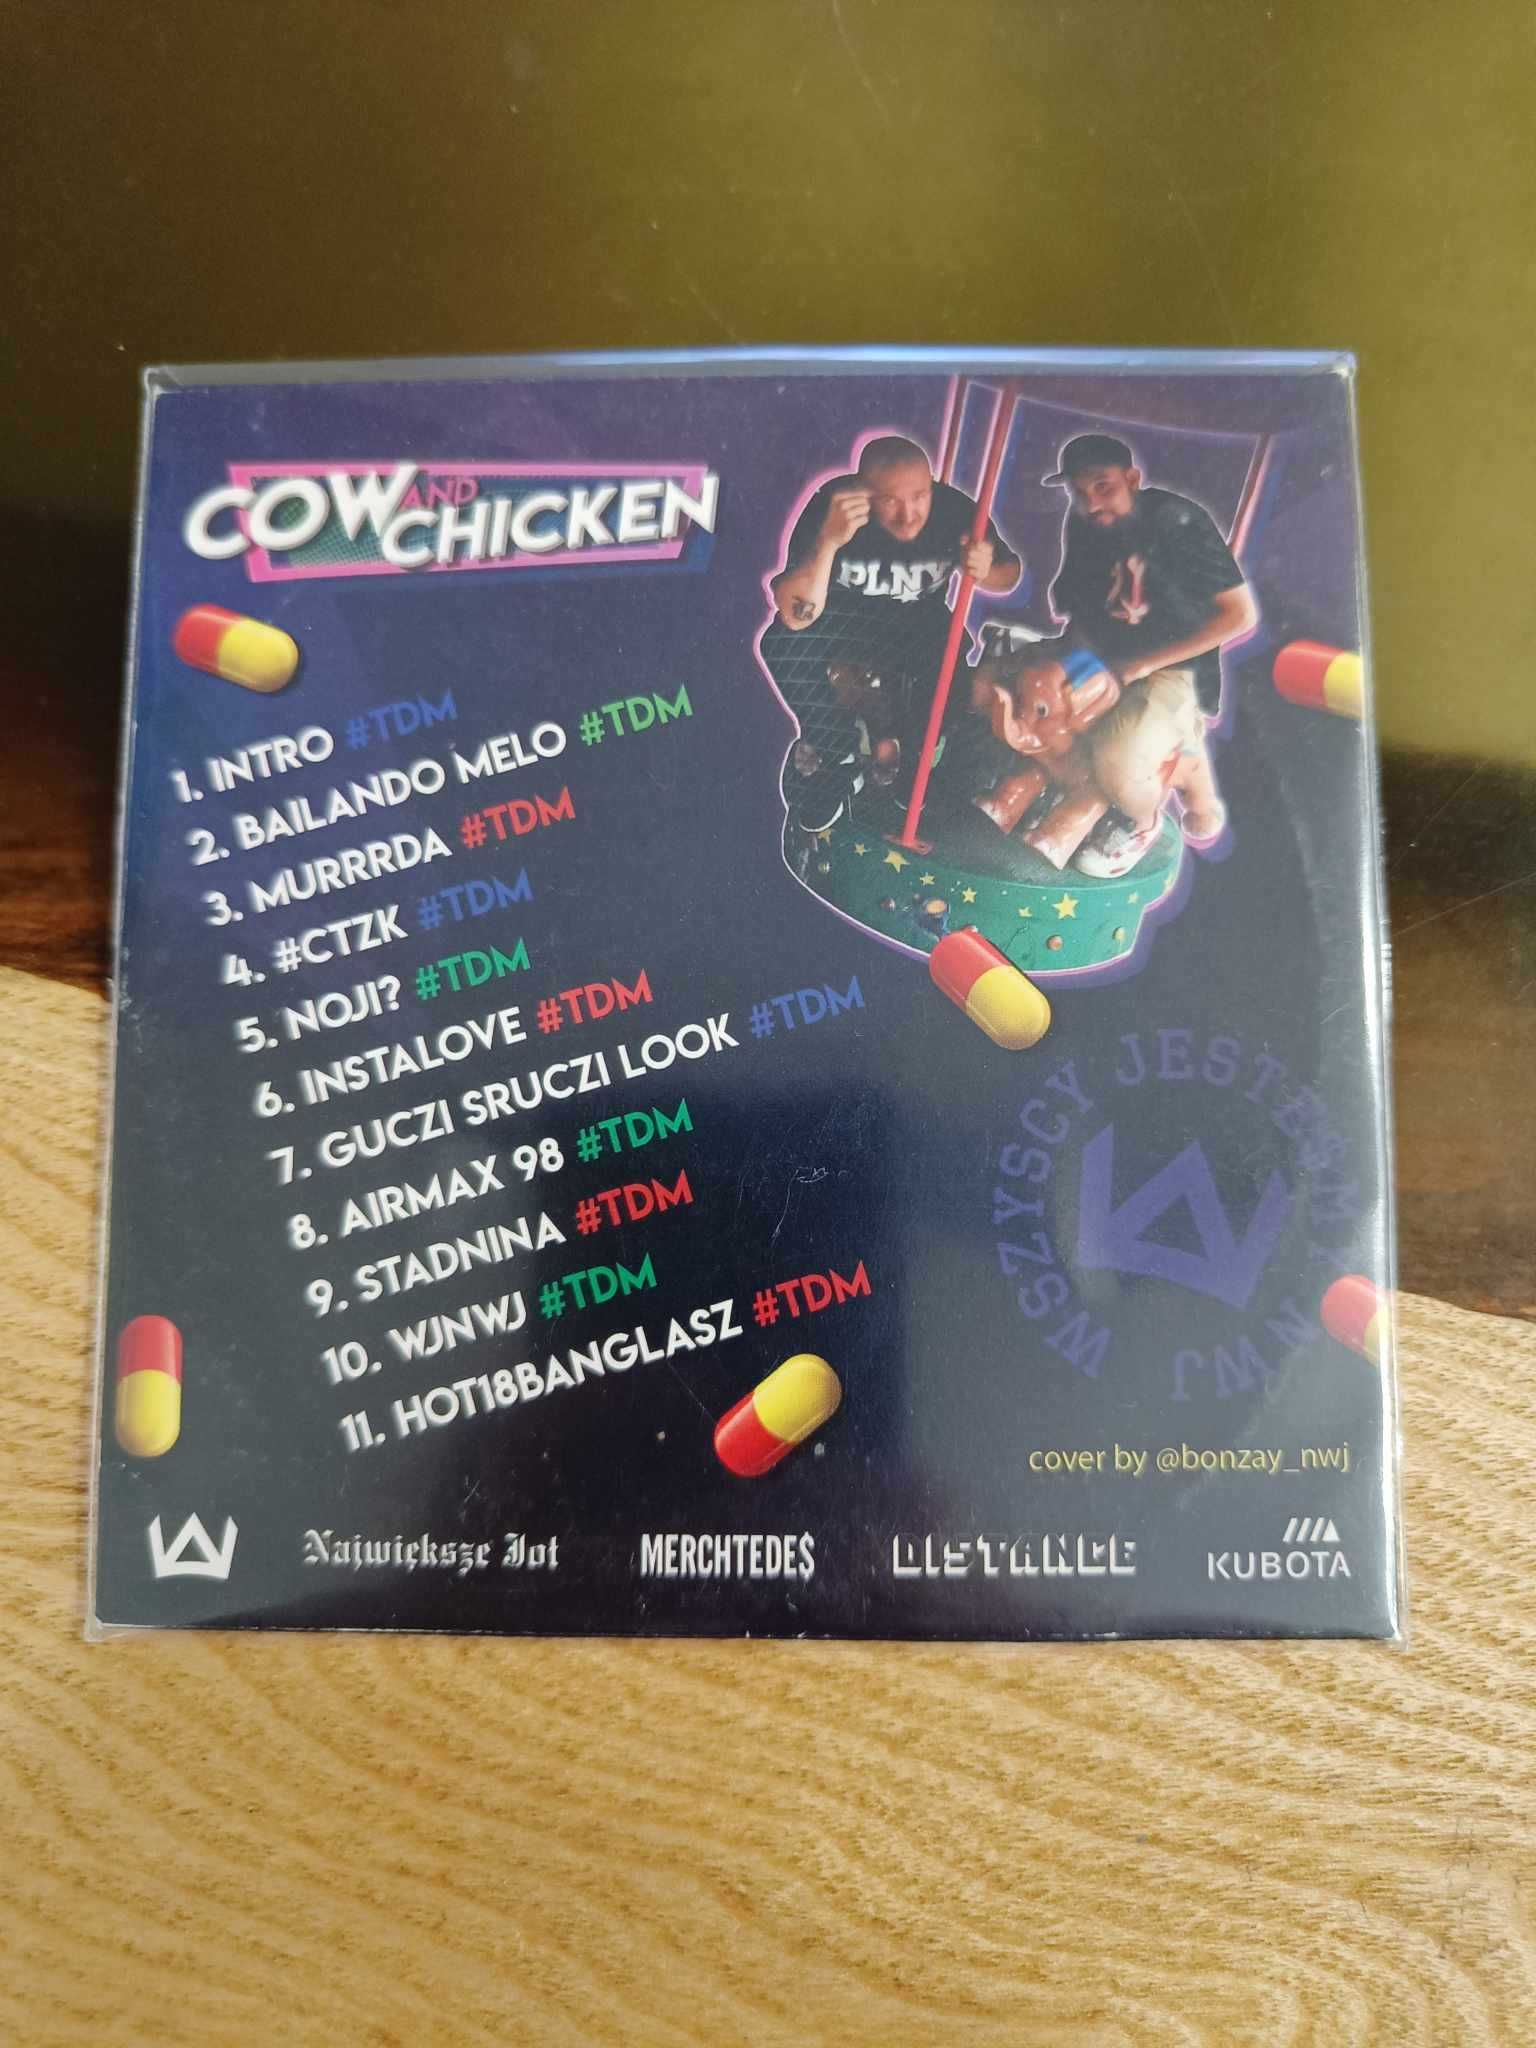 TEDE - Cow & Chicken - TDM Vixtape - UNIKAT mixtape urodziny